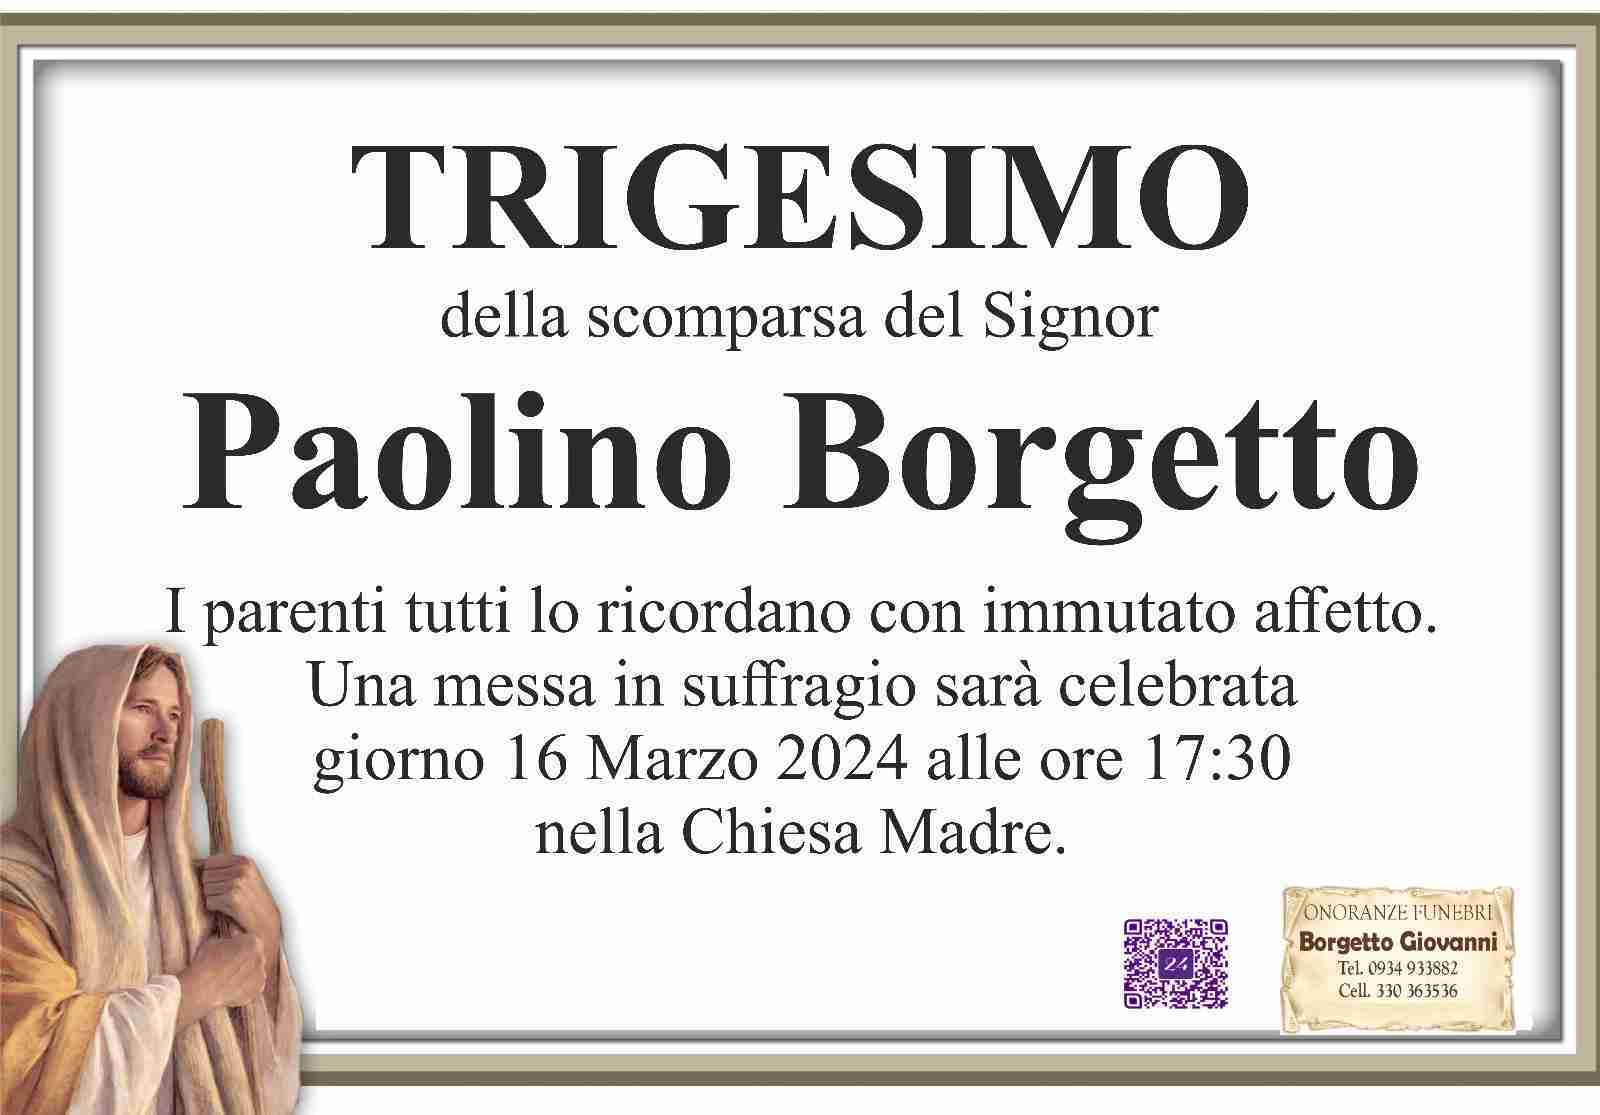 Paolino Borgetto